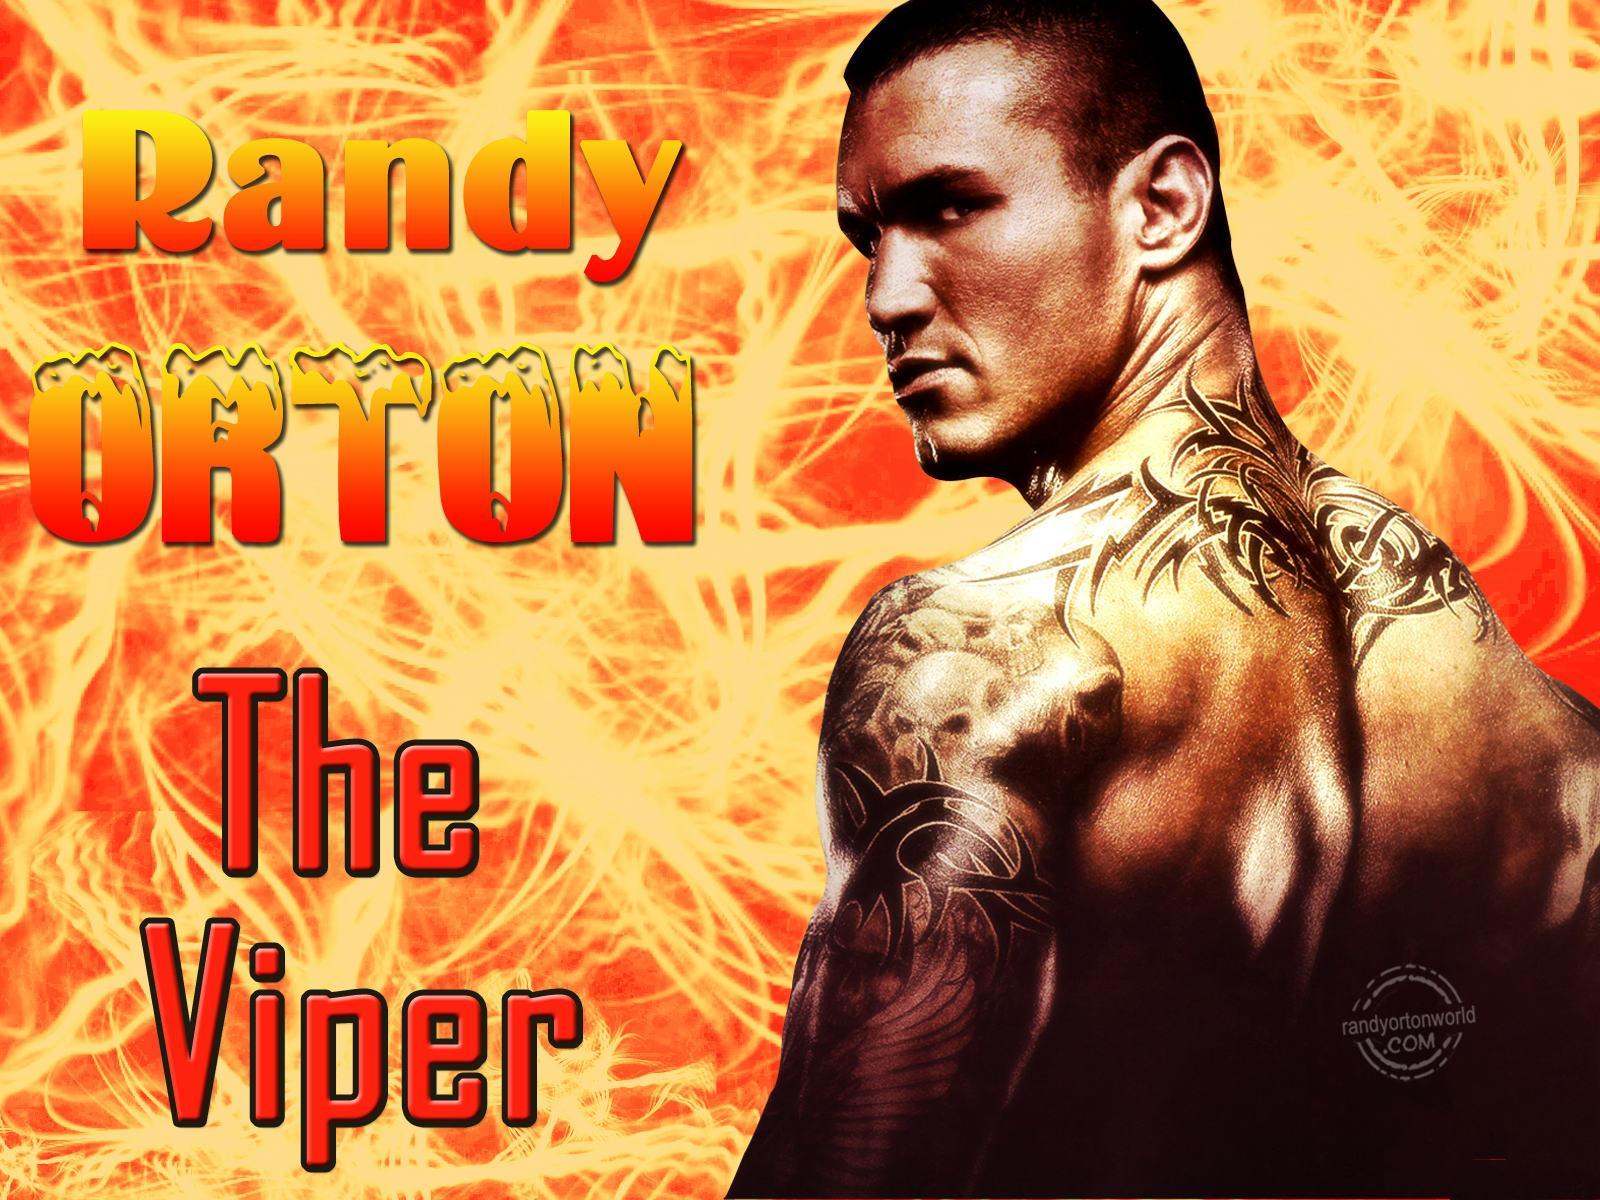 Randy Orton HD Wallpaper. WWE HD Wallpaper, WWE Image, WWE